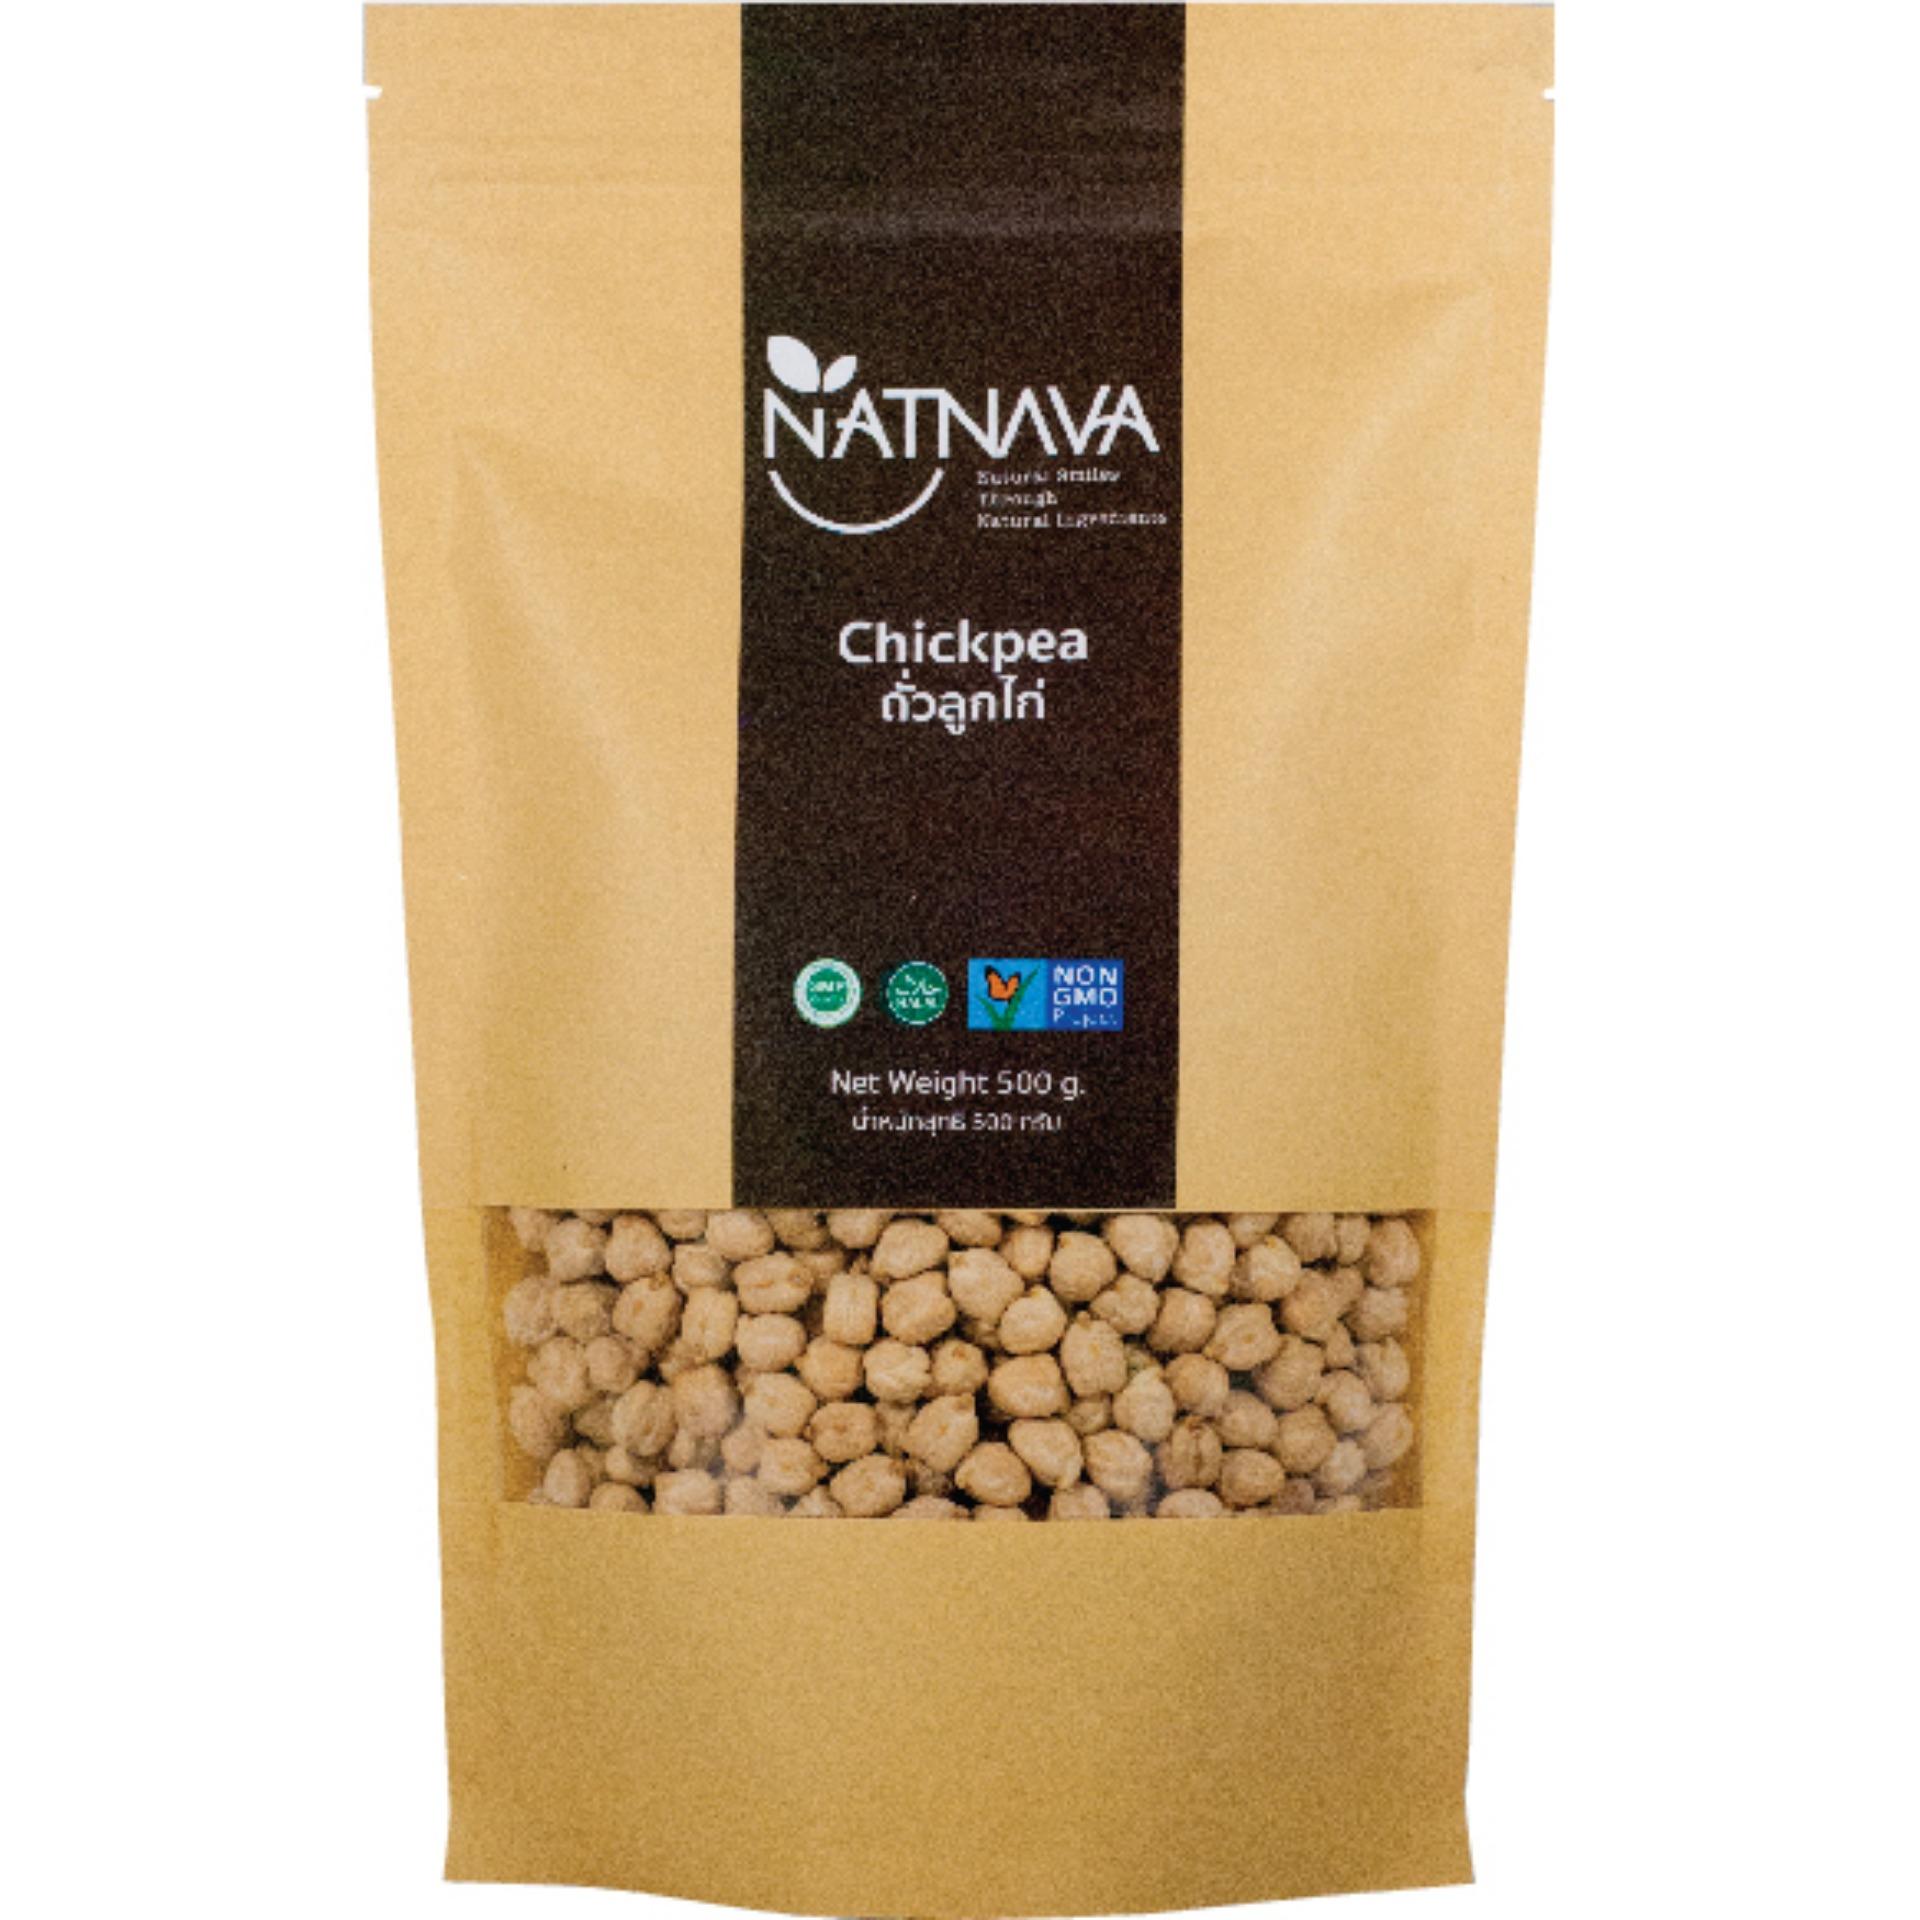 ถั่วลูกไก่ (Chickpea) เกรดพรีเมียมร์ (USA) 500 g  I NATNAVA